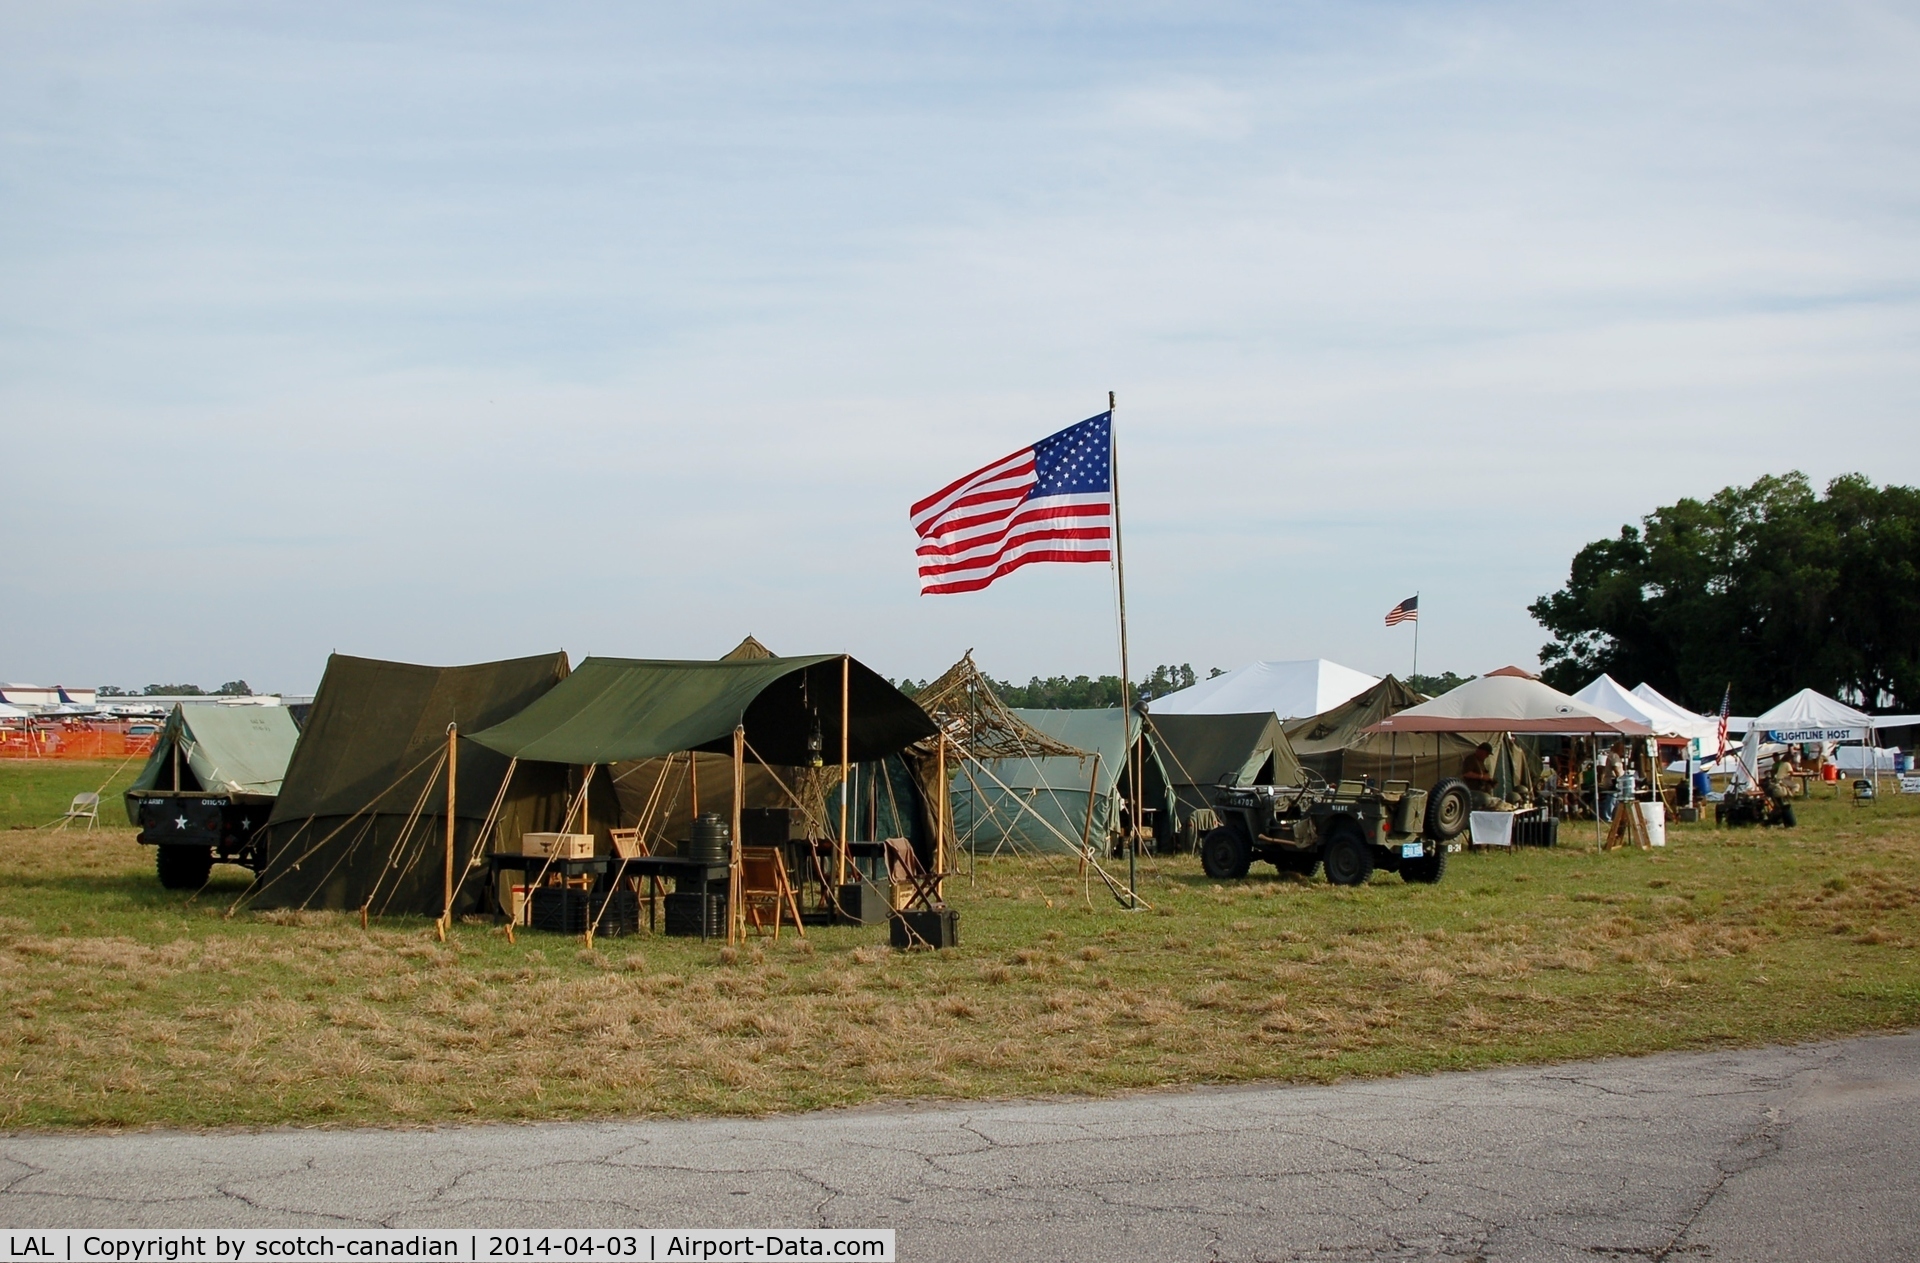 Lakeland Linder Regional Airport (LAL) - WW II Military Reenactment Camp at 2014 Sun n Fun, Lakeland Linder Regional Airport, Lakeland, FL